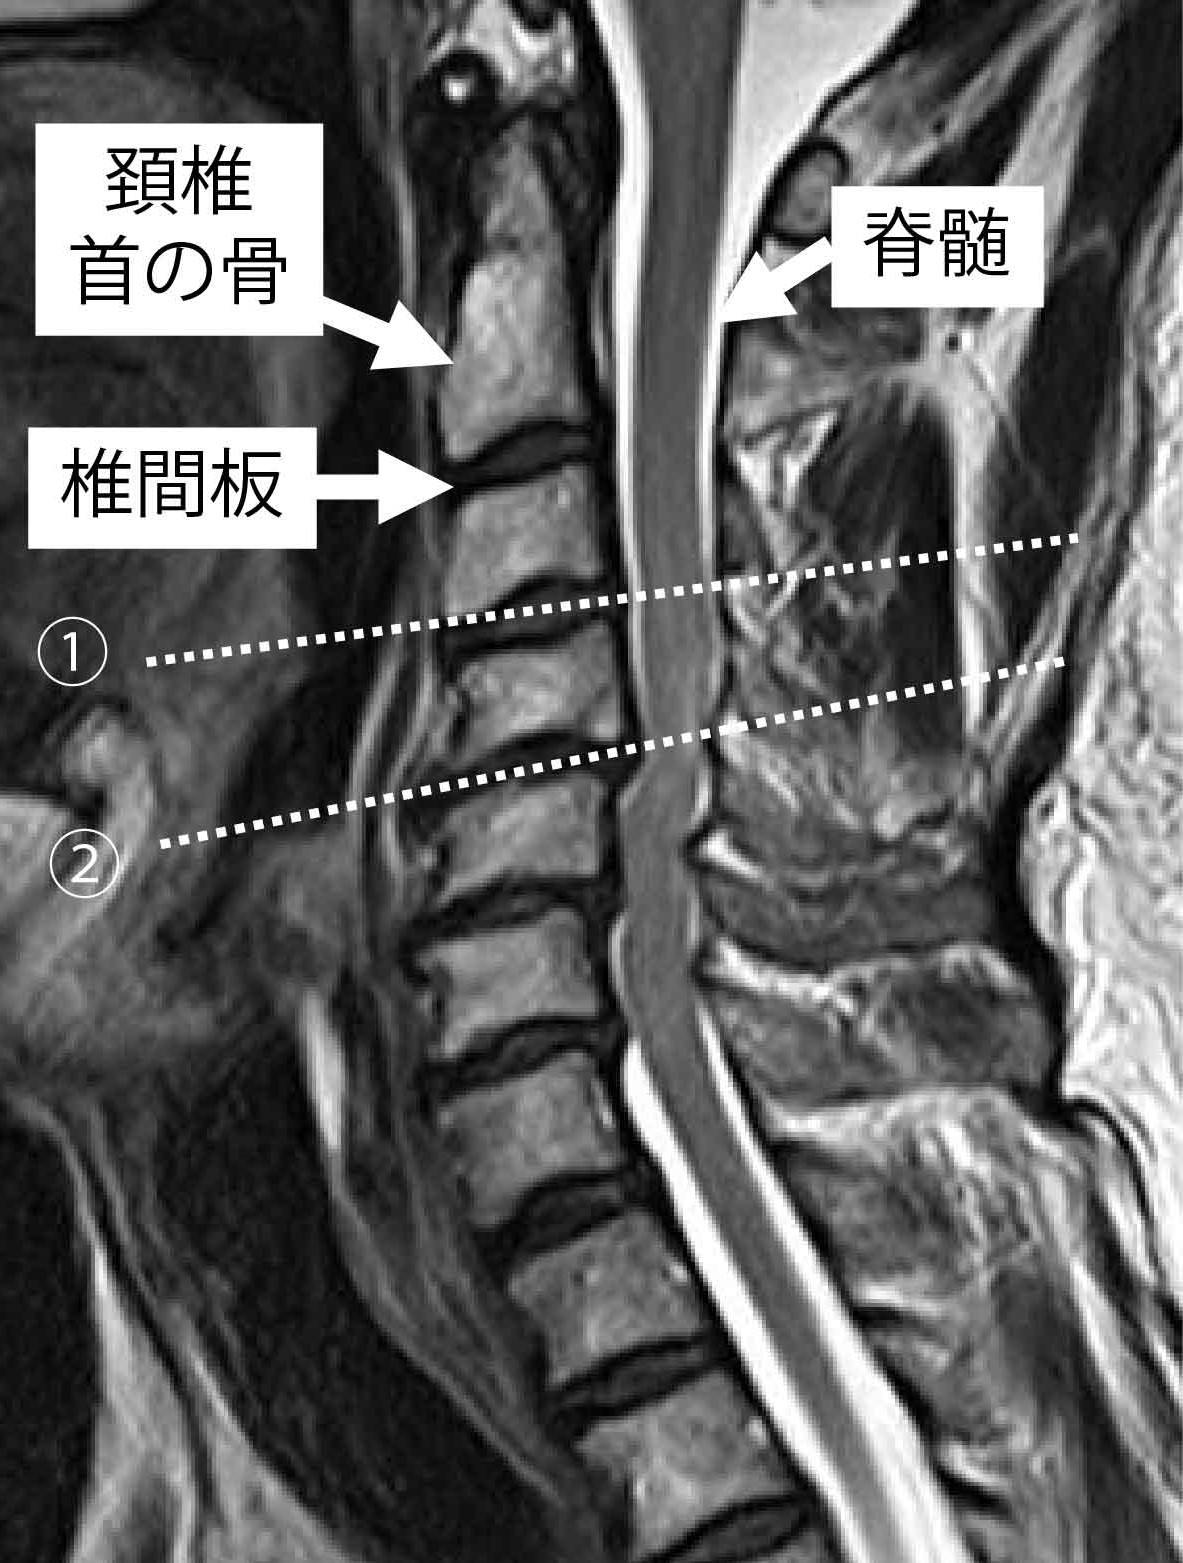 図１：頚椎（首）を横から見たMRI。①の部分では脊髄の圧迫はない状態です。②の部分では脊髄が蛇行しているように見え、圧迫が起こっている状態です。